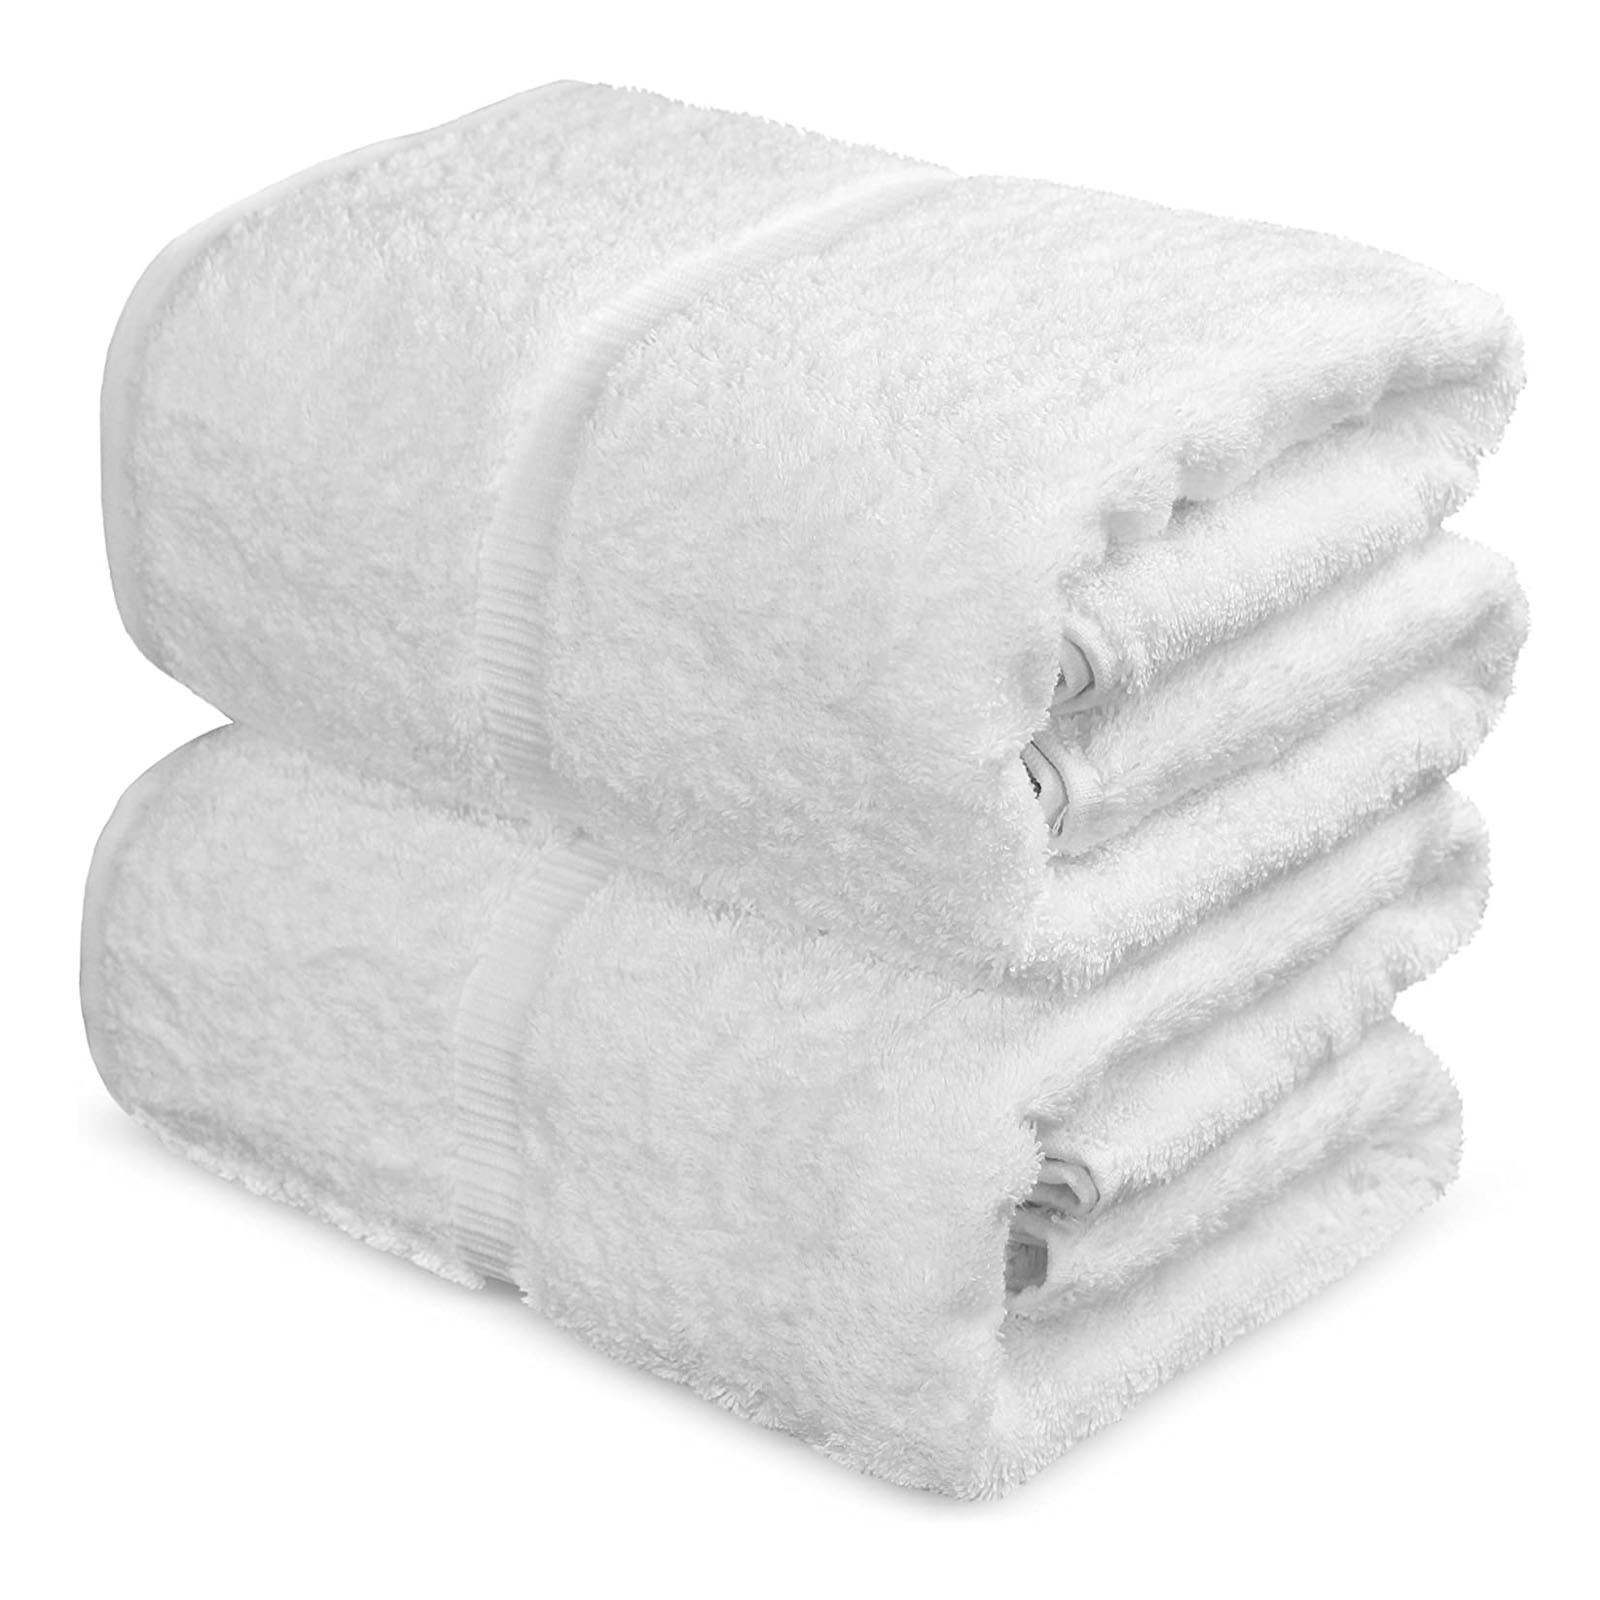 Soft Cotton Bath Towels Large White Cotton Bath Towel Bathroom Serviette Shower Sheets Adults Men Women Beach Face Sheet C11